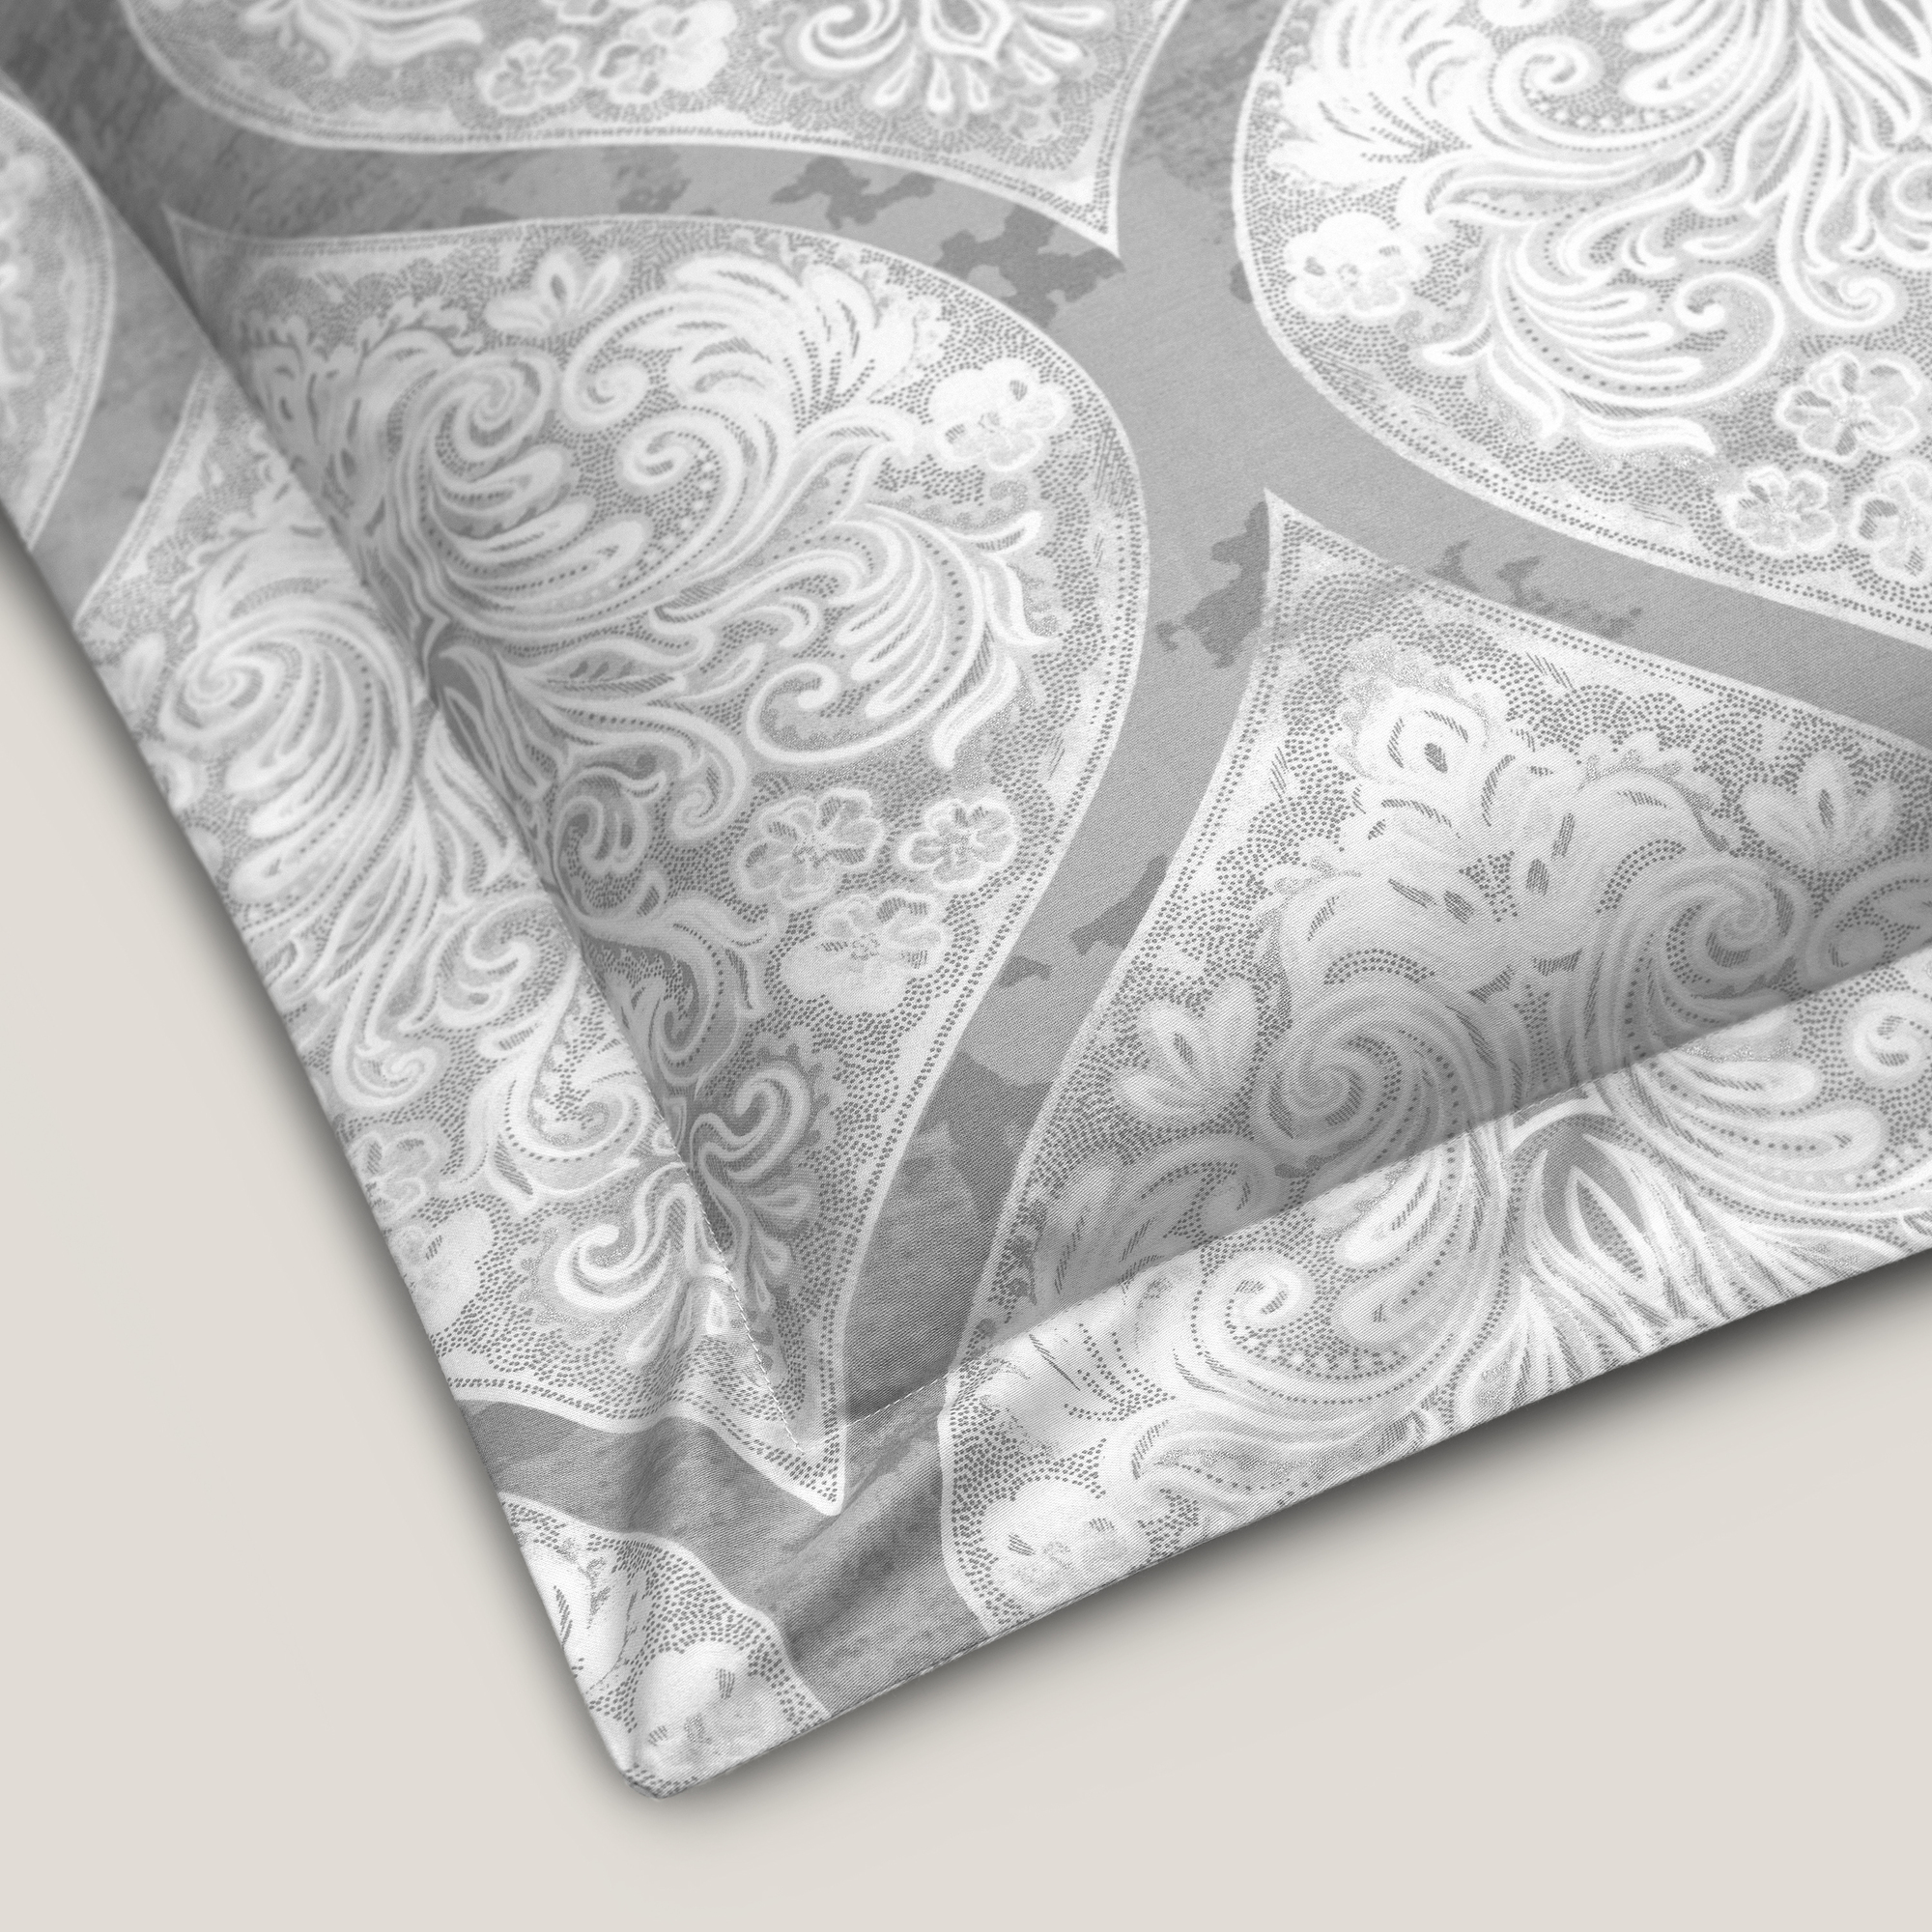 Комплект постельного белья Togas Коссоно серый Двуспальный кинг сайз, размер Кинг сайз - фото 11